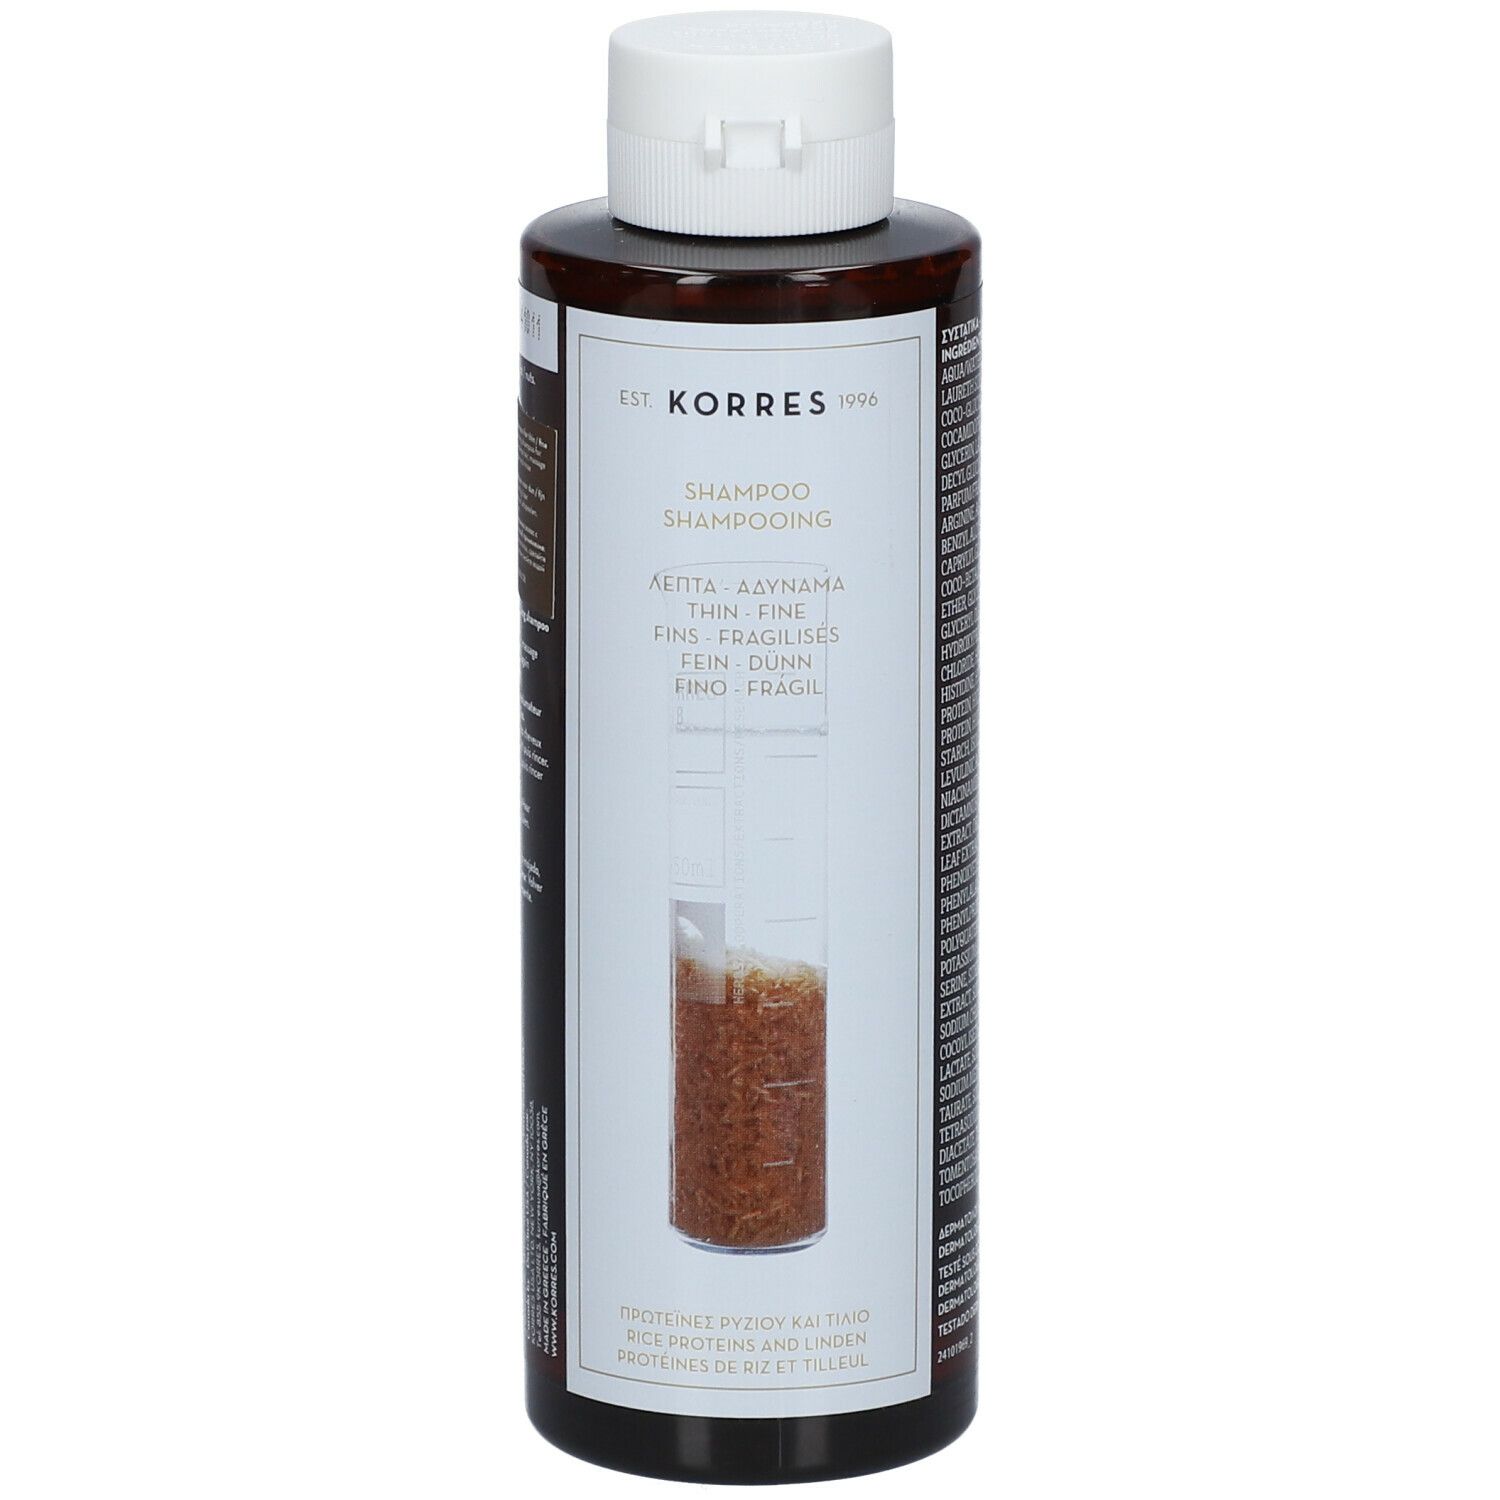 KORRES® Shampoo Reisproteine und Linde